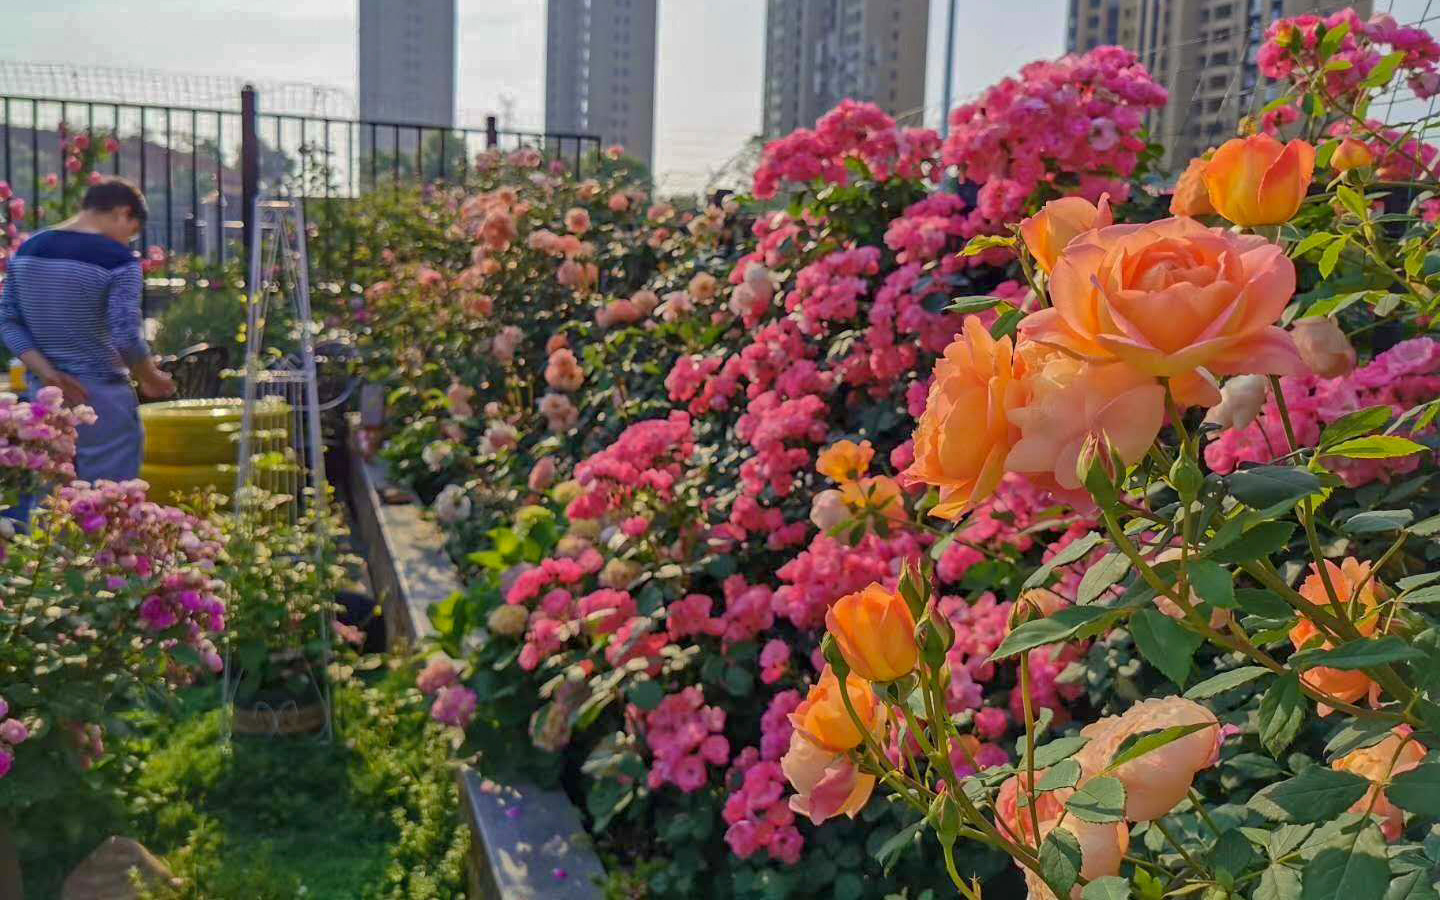 Khu vườn sân thượng sở hữu hàng trăm loại hoa hồng vô cùng rực rỡ